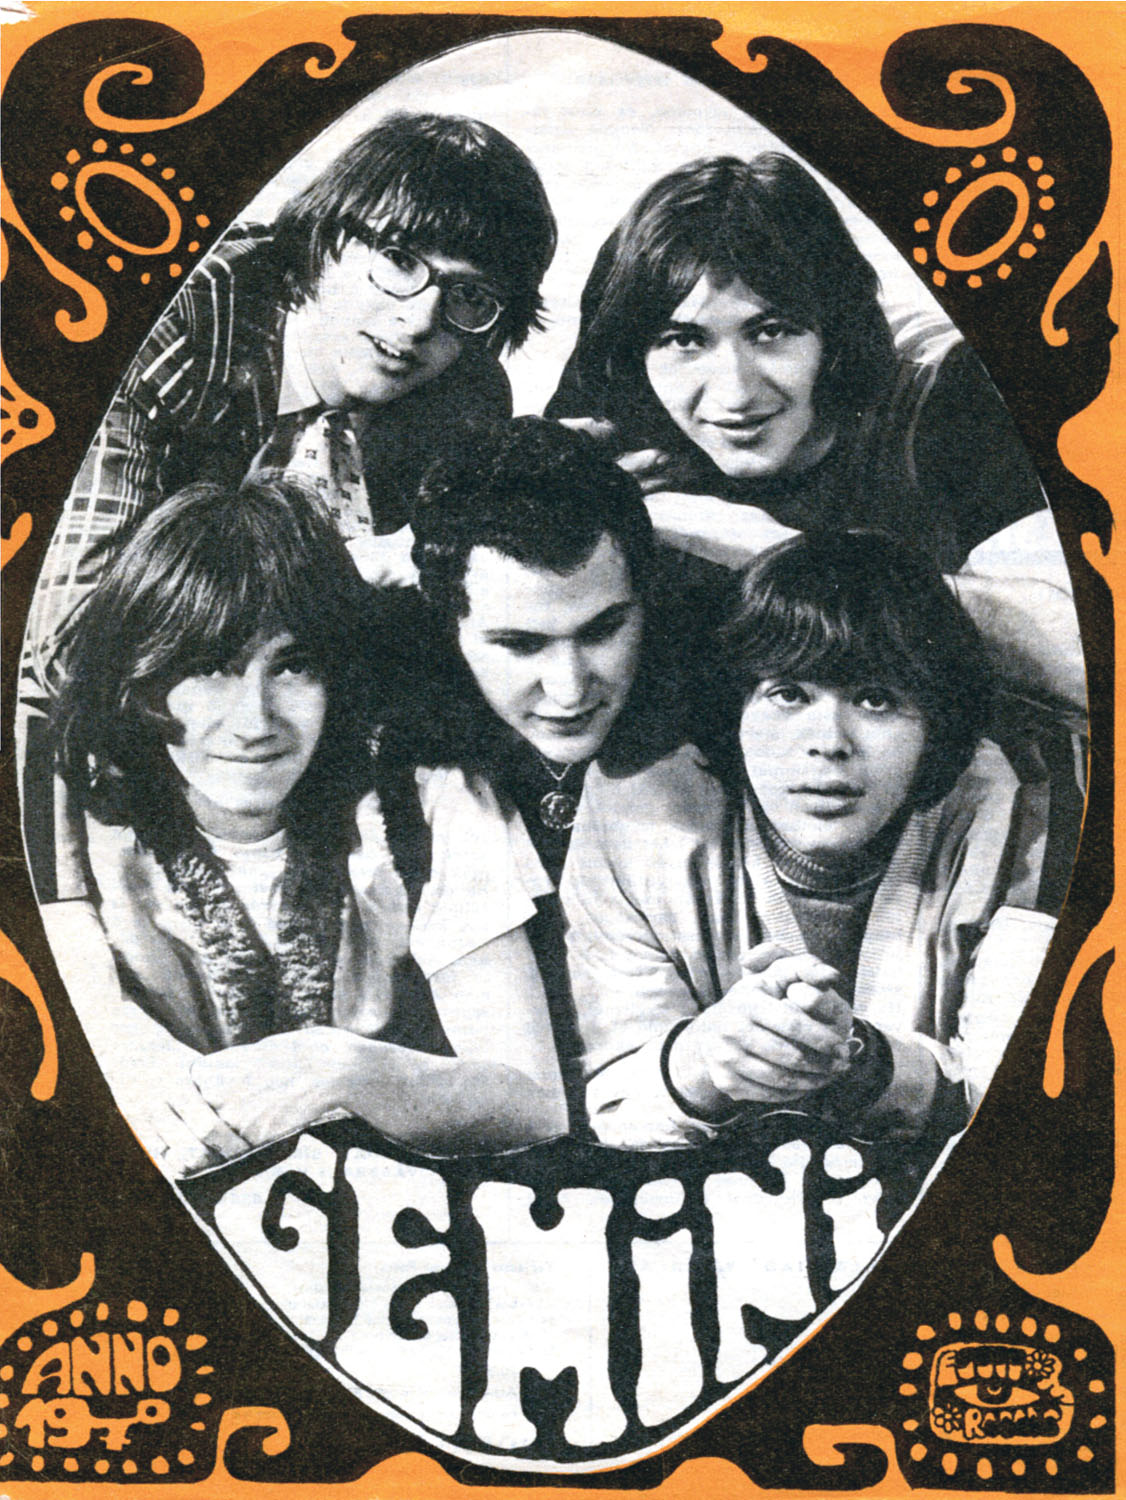 A Gemini 1970-ben. Fent (balról): Markó András és Bardóczi Gyula, lent: Kékes Zoltán, Várszegi Gábor, Szabó György